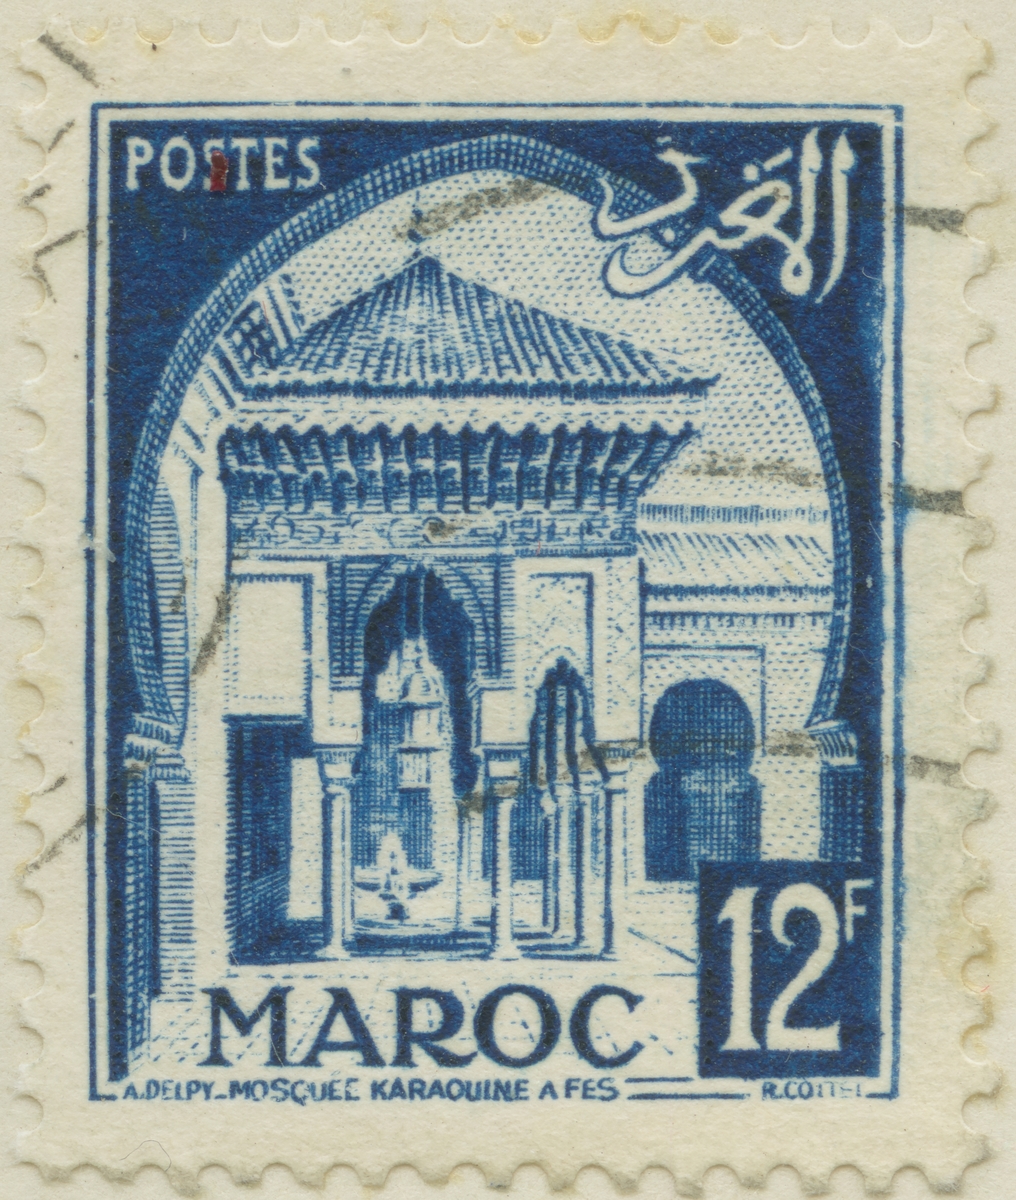 Frimärke ur Gösta Bodmans filatelistiska motivsamling, påbörjad 1950.
Frimärke från Franska Marocko, 1951. Motiv av moskéen Karaouin.